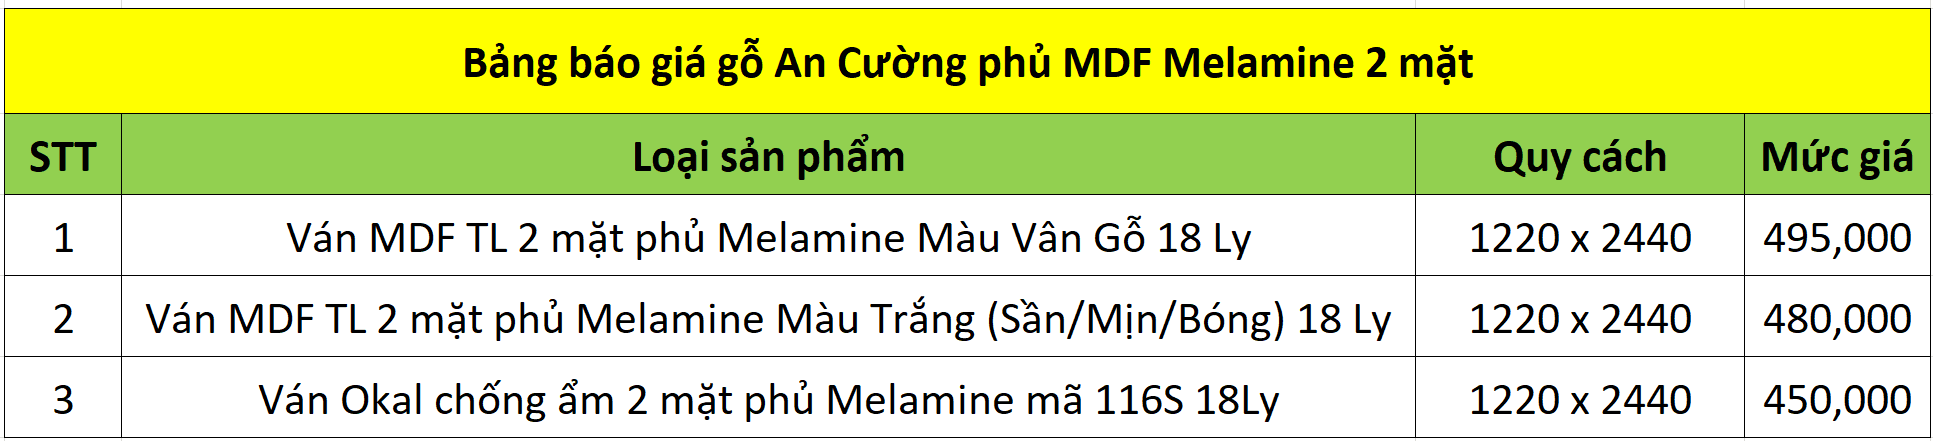 Bảng báo giá gỗ An Cường MDF phủ Melamine 2 mặt